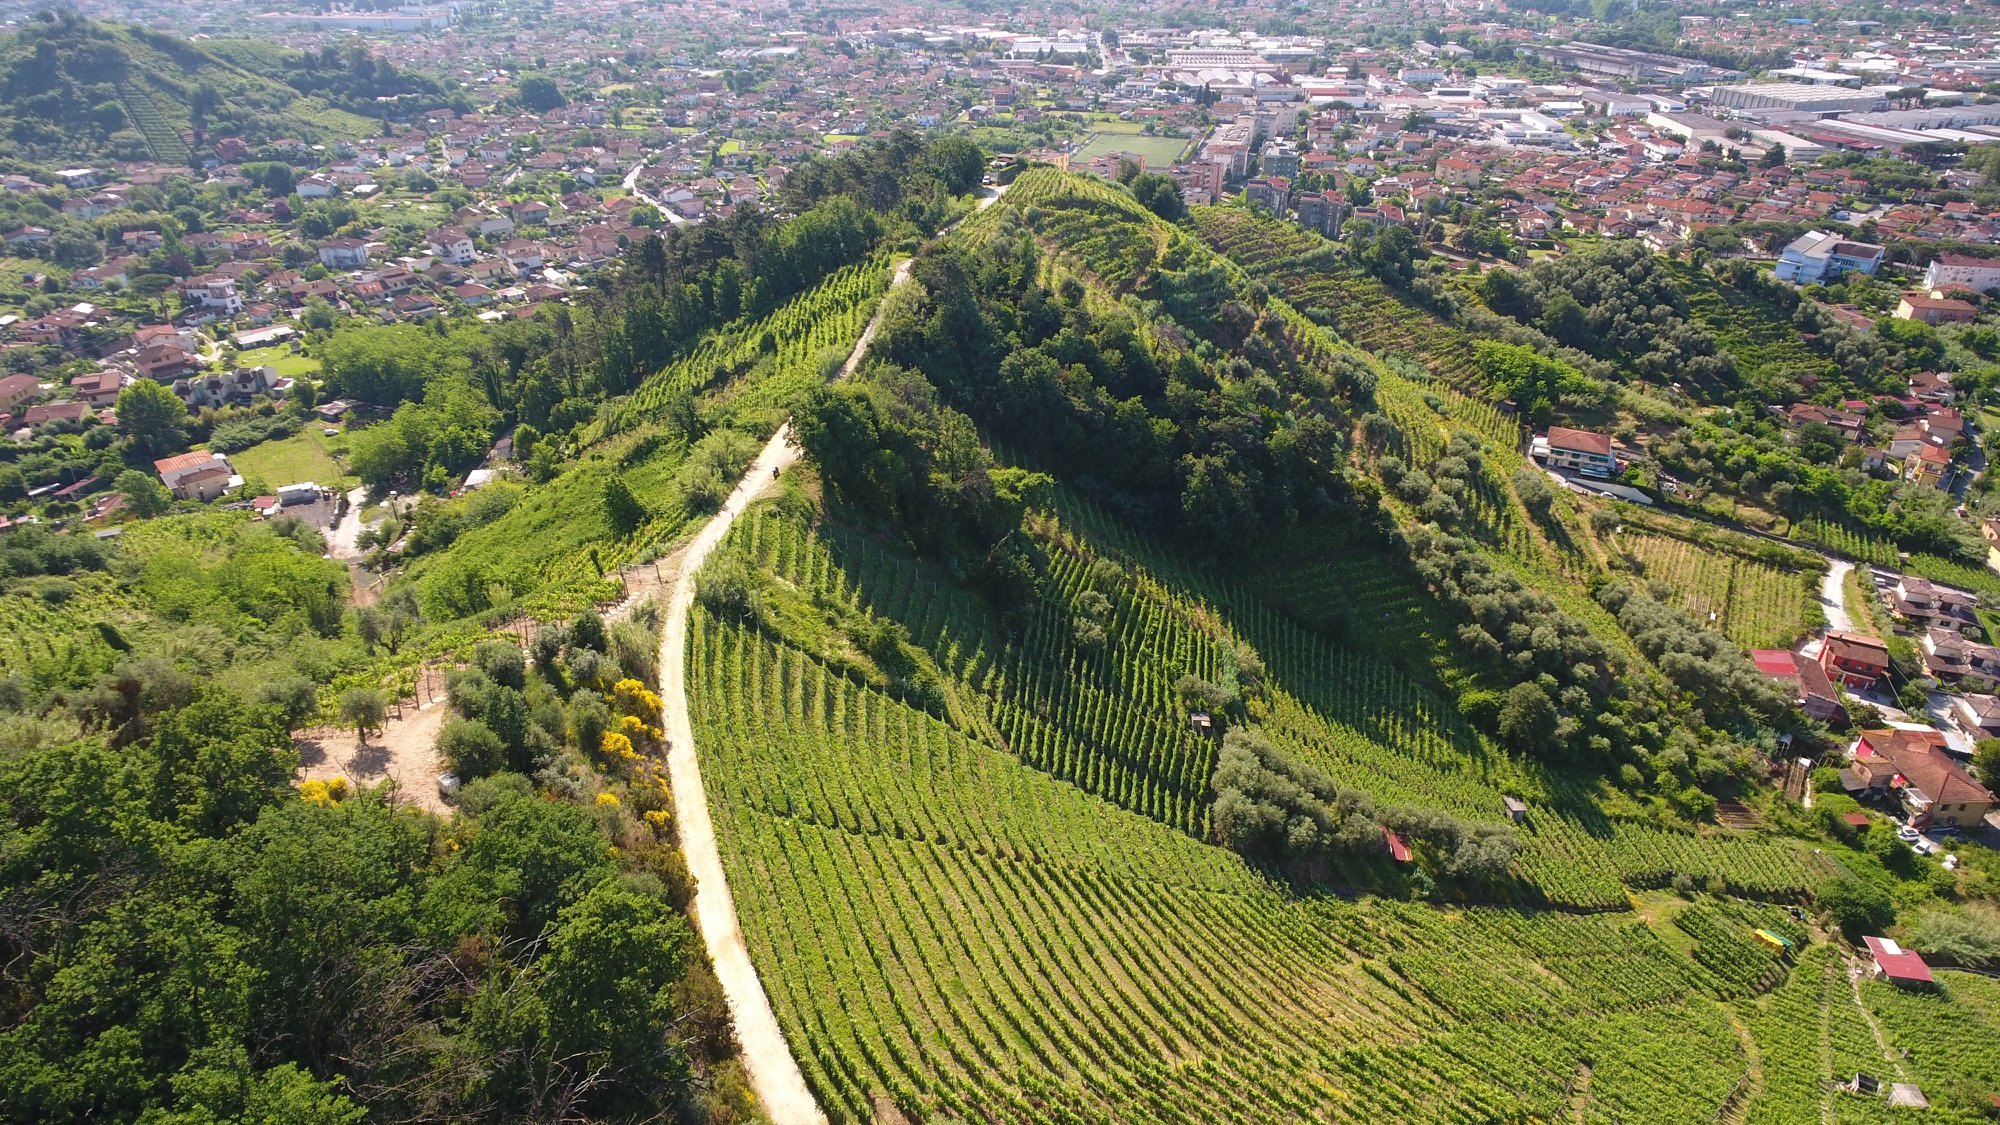 Toszkána legészakibb részén, Liguria határán, Massa és Carrara környékén van egy magát a toszkán viticoltura eroicaként meghatározó apelláció, a Candia DOC.